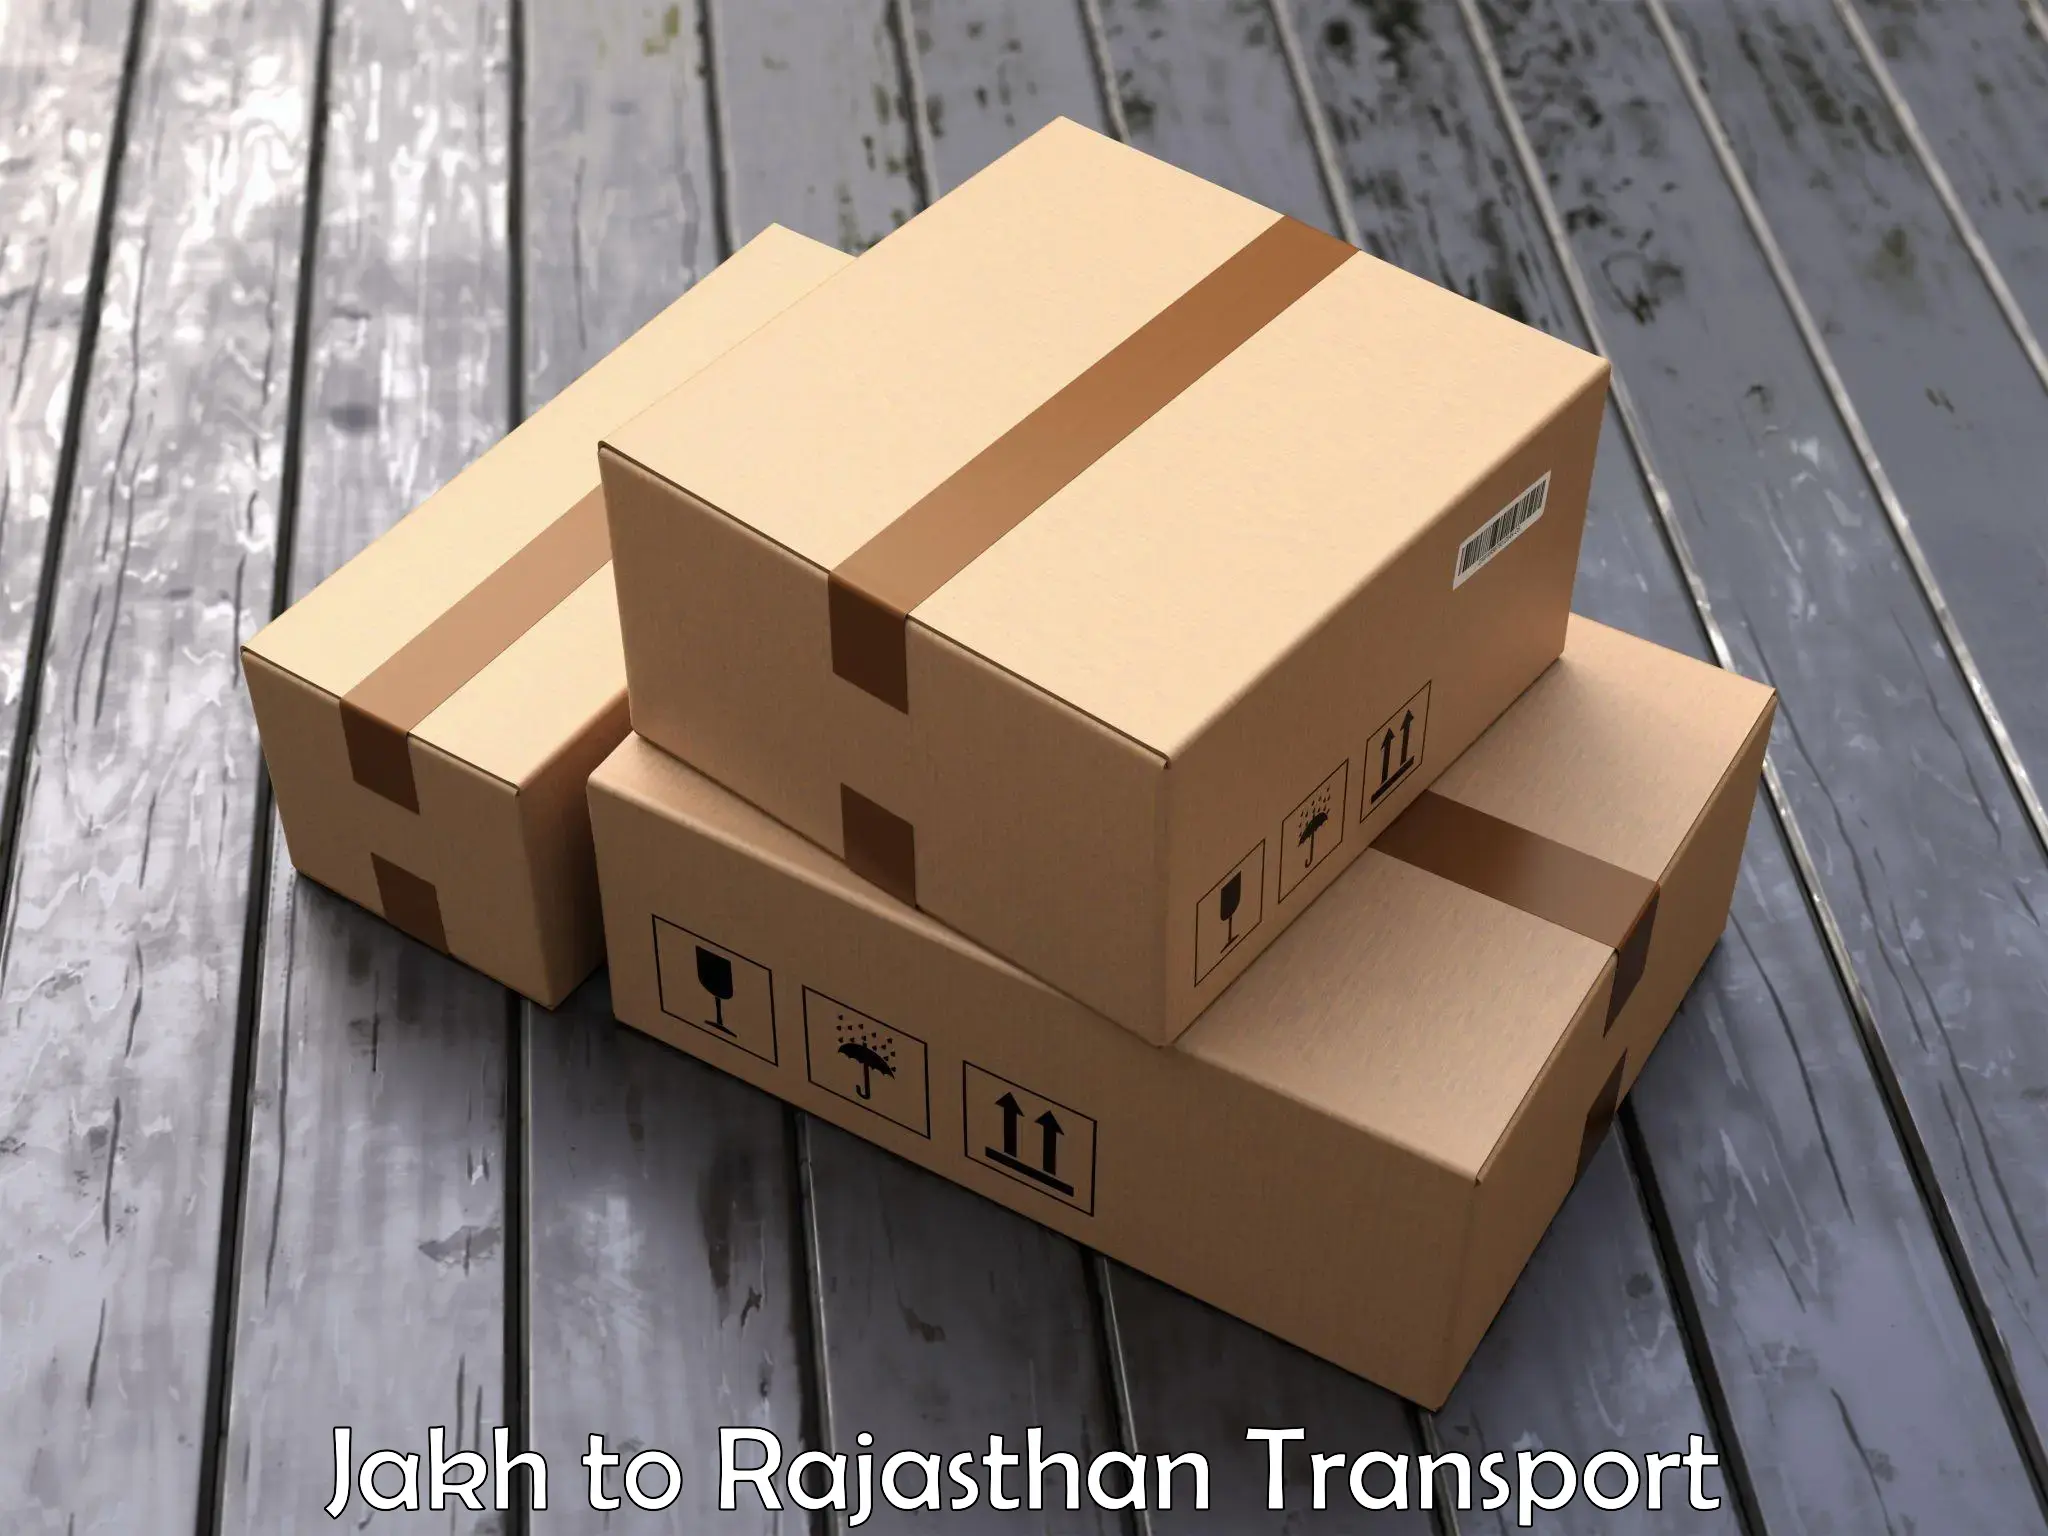 Daily transport service Jakh to Chaksu